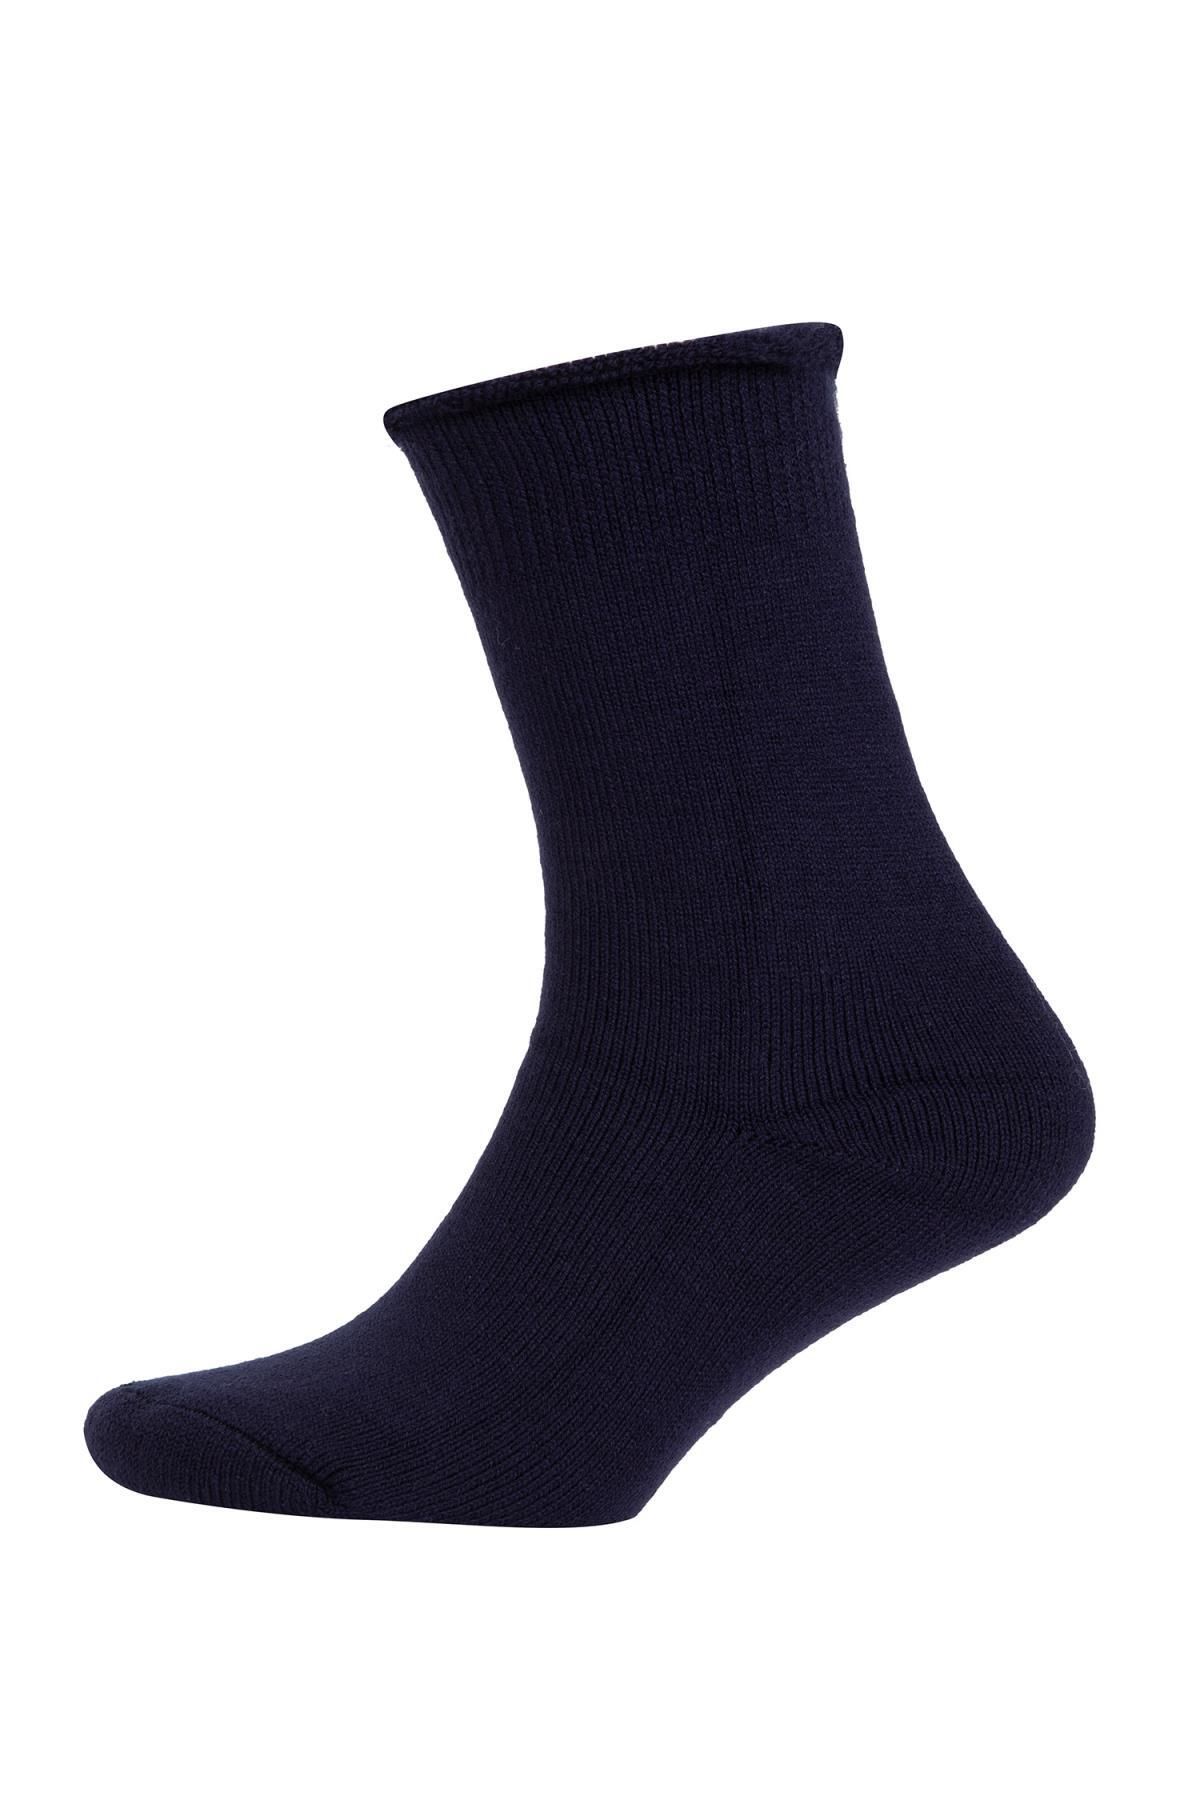 Defacto Erkek Termal Çorap